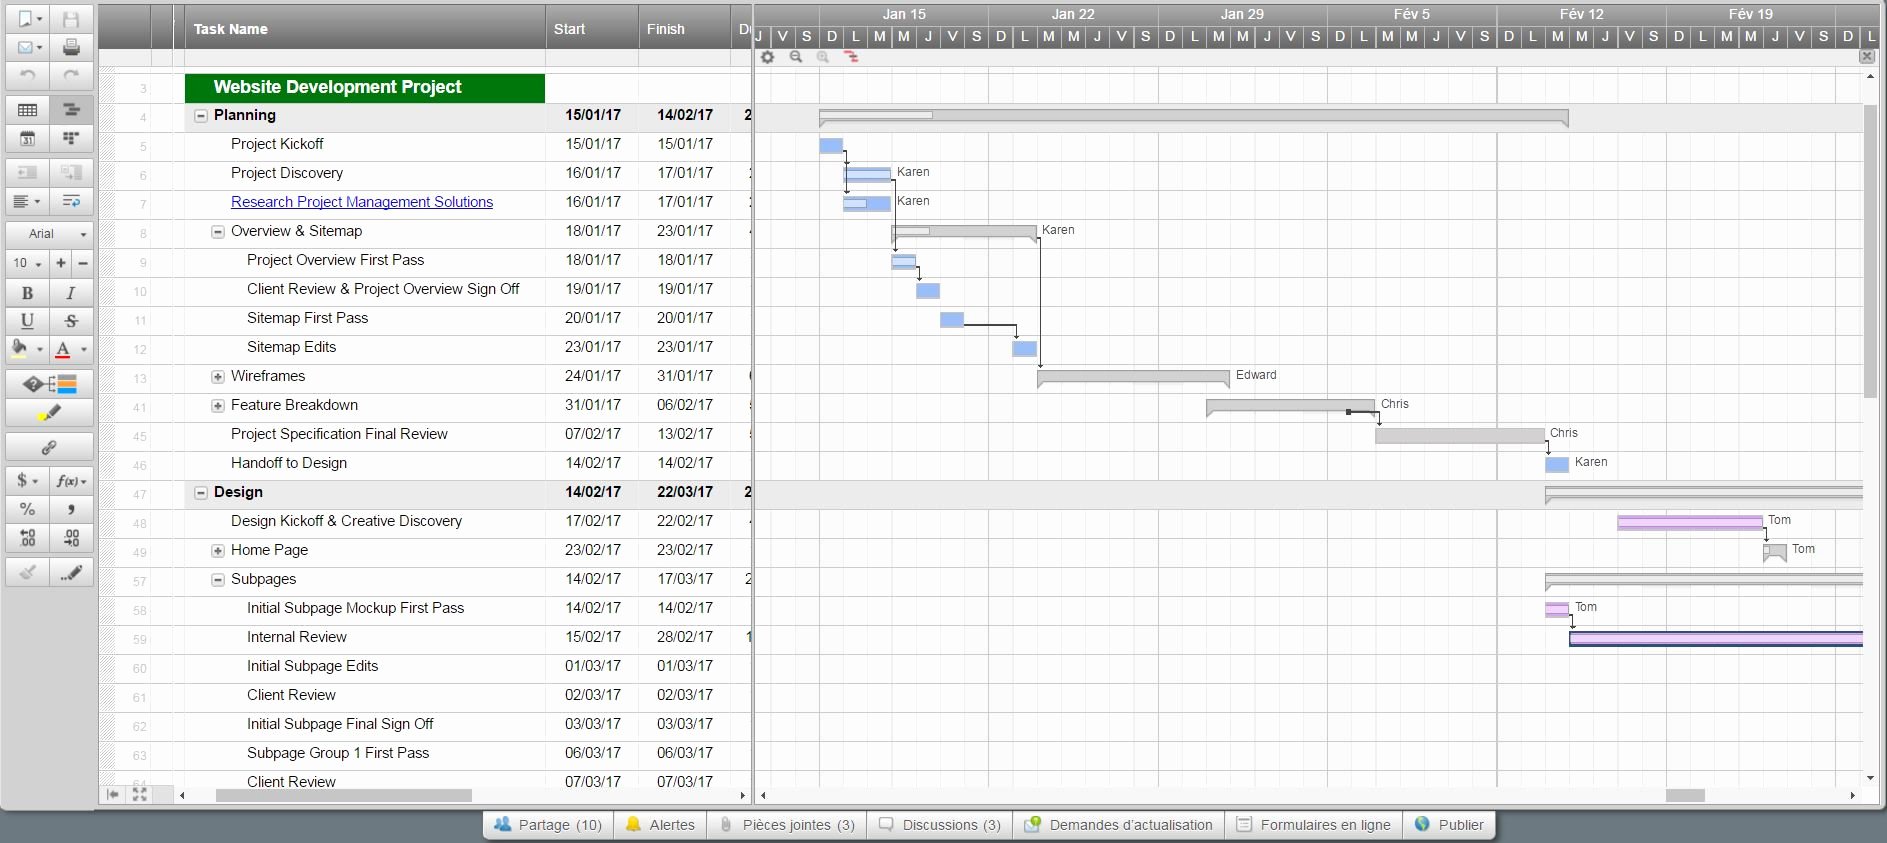 Marketing Timeline Template Excel Elegant Free Marketing Timeline Tips and Templates Smartsheet